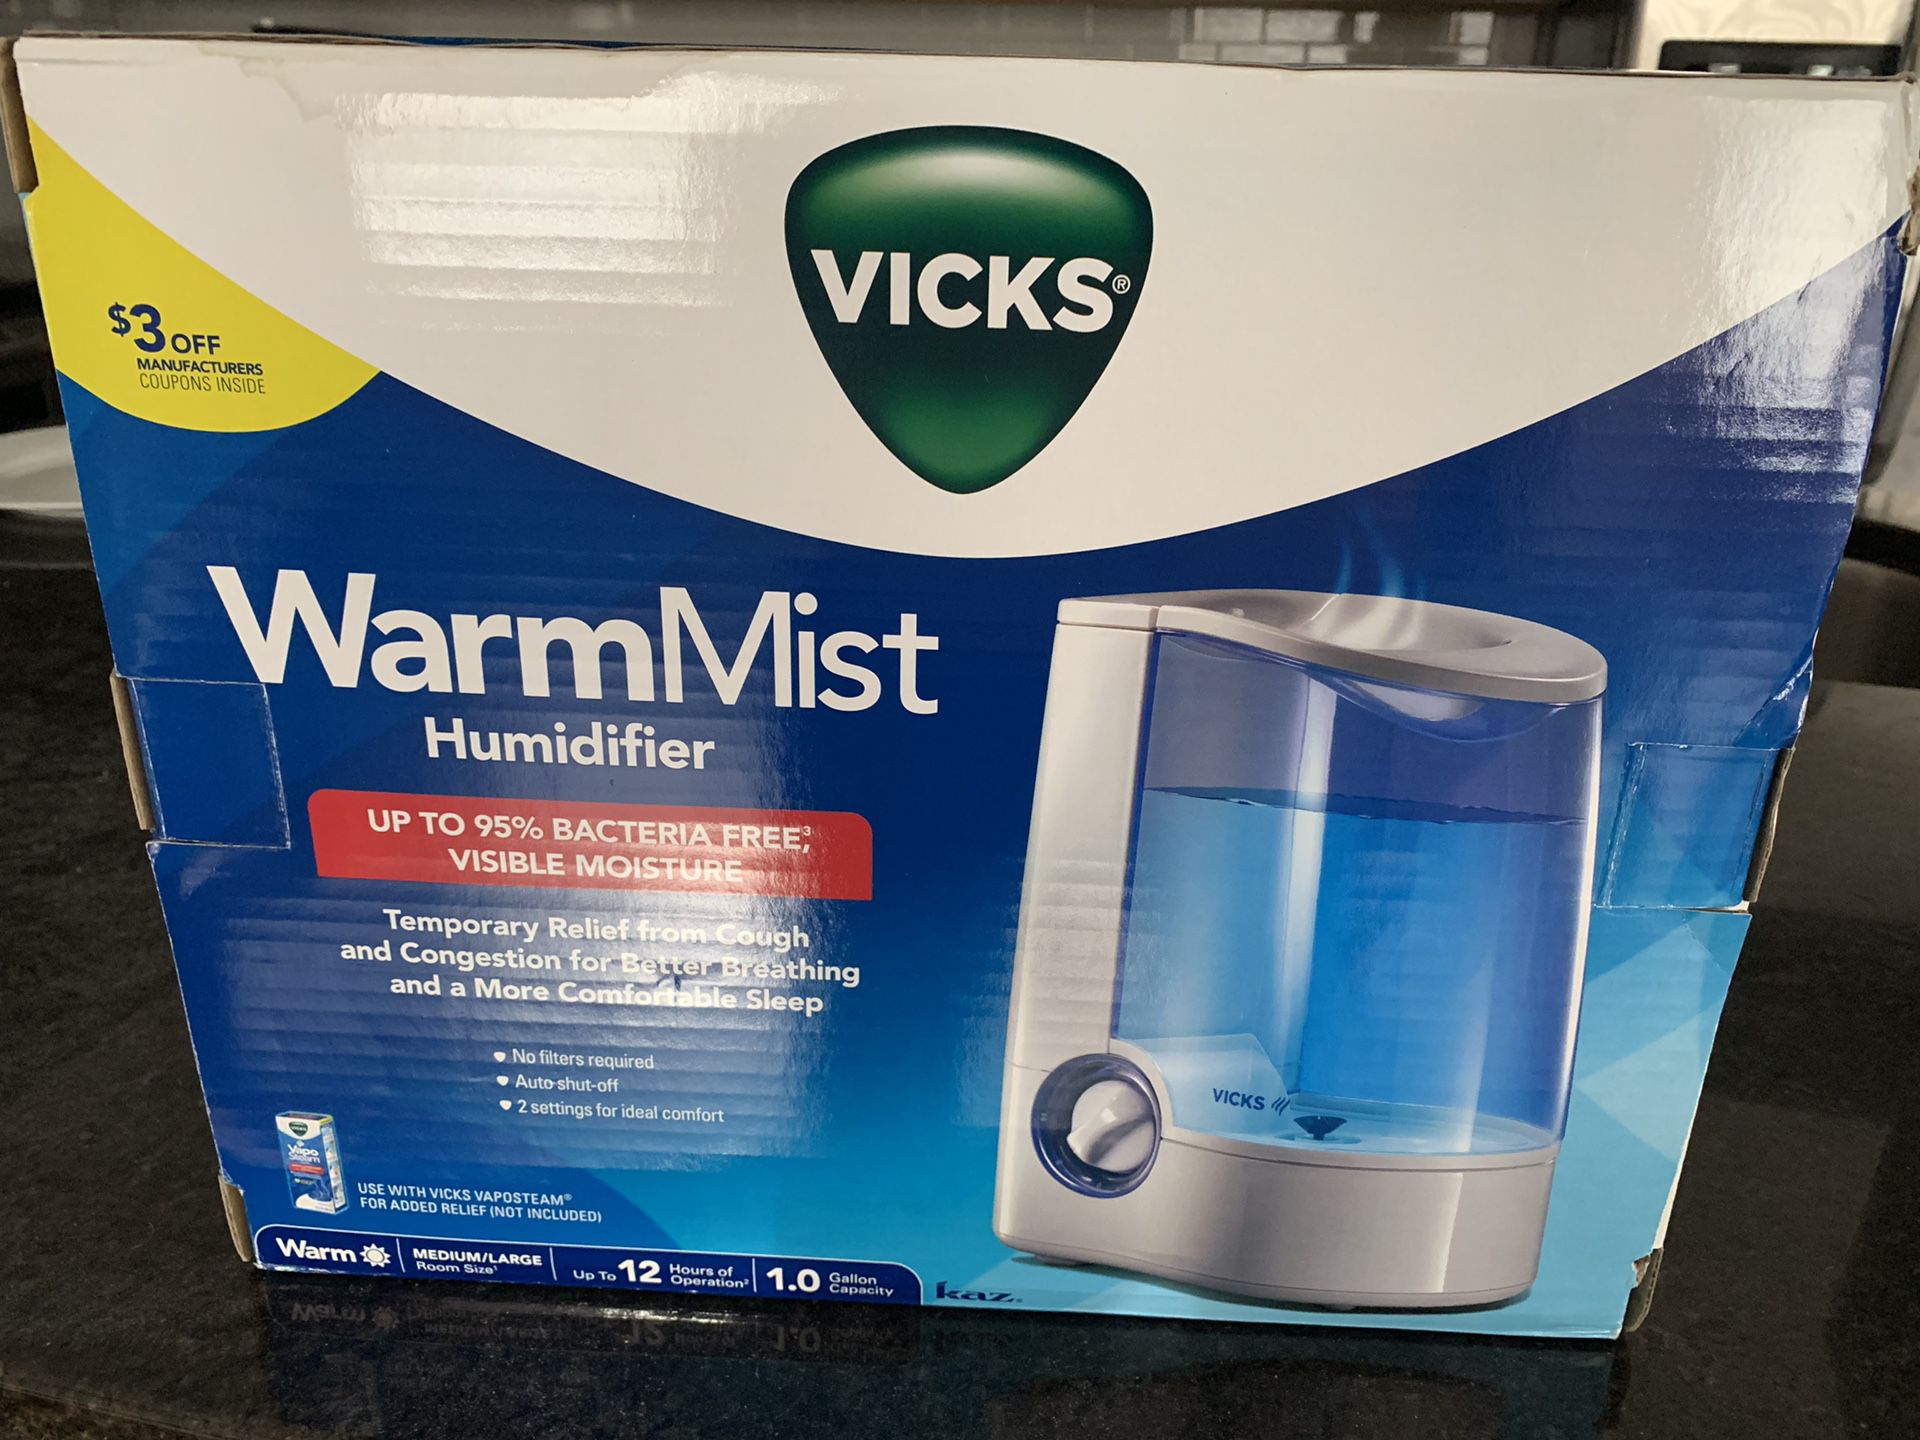 VICKS WarmMist Humidifier